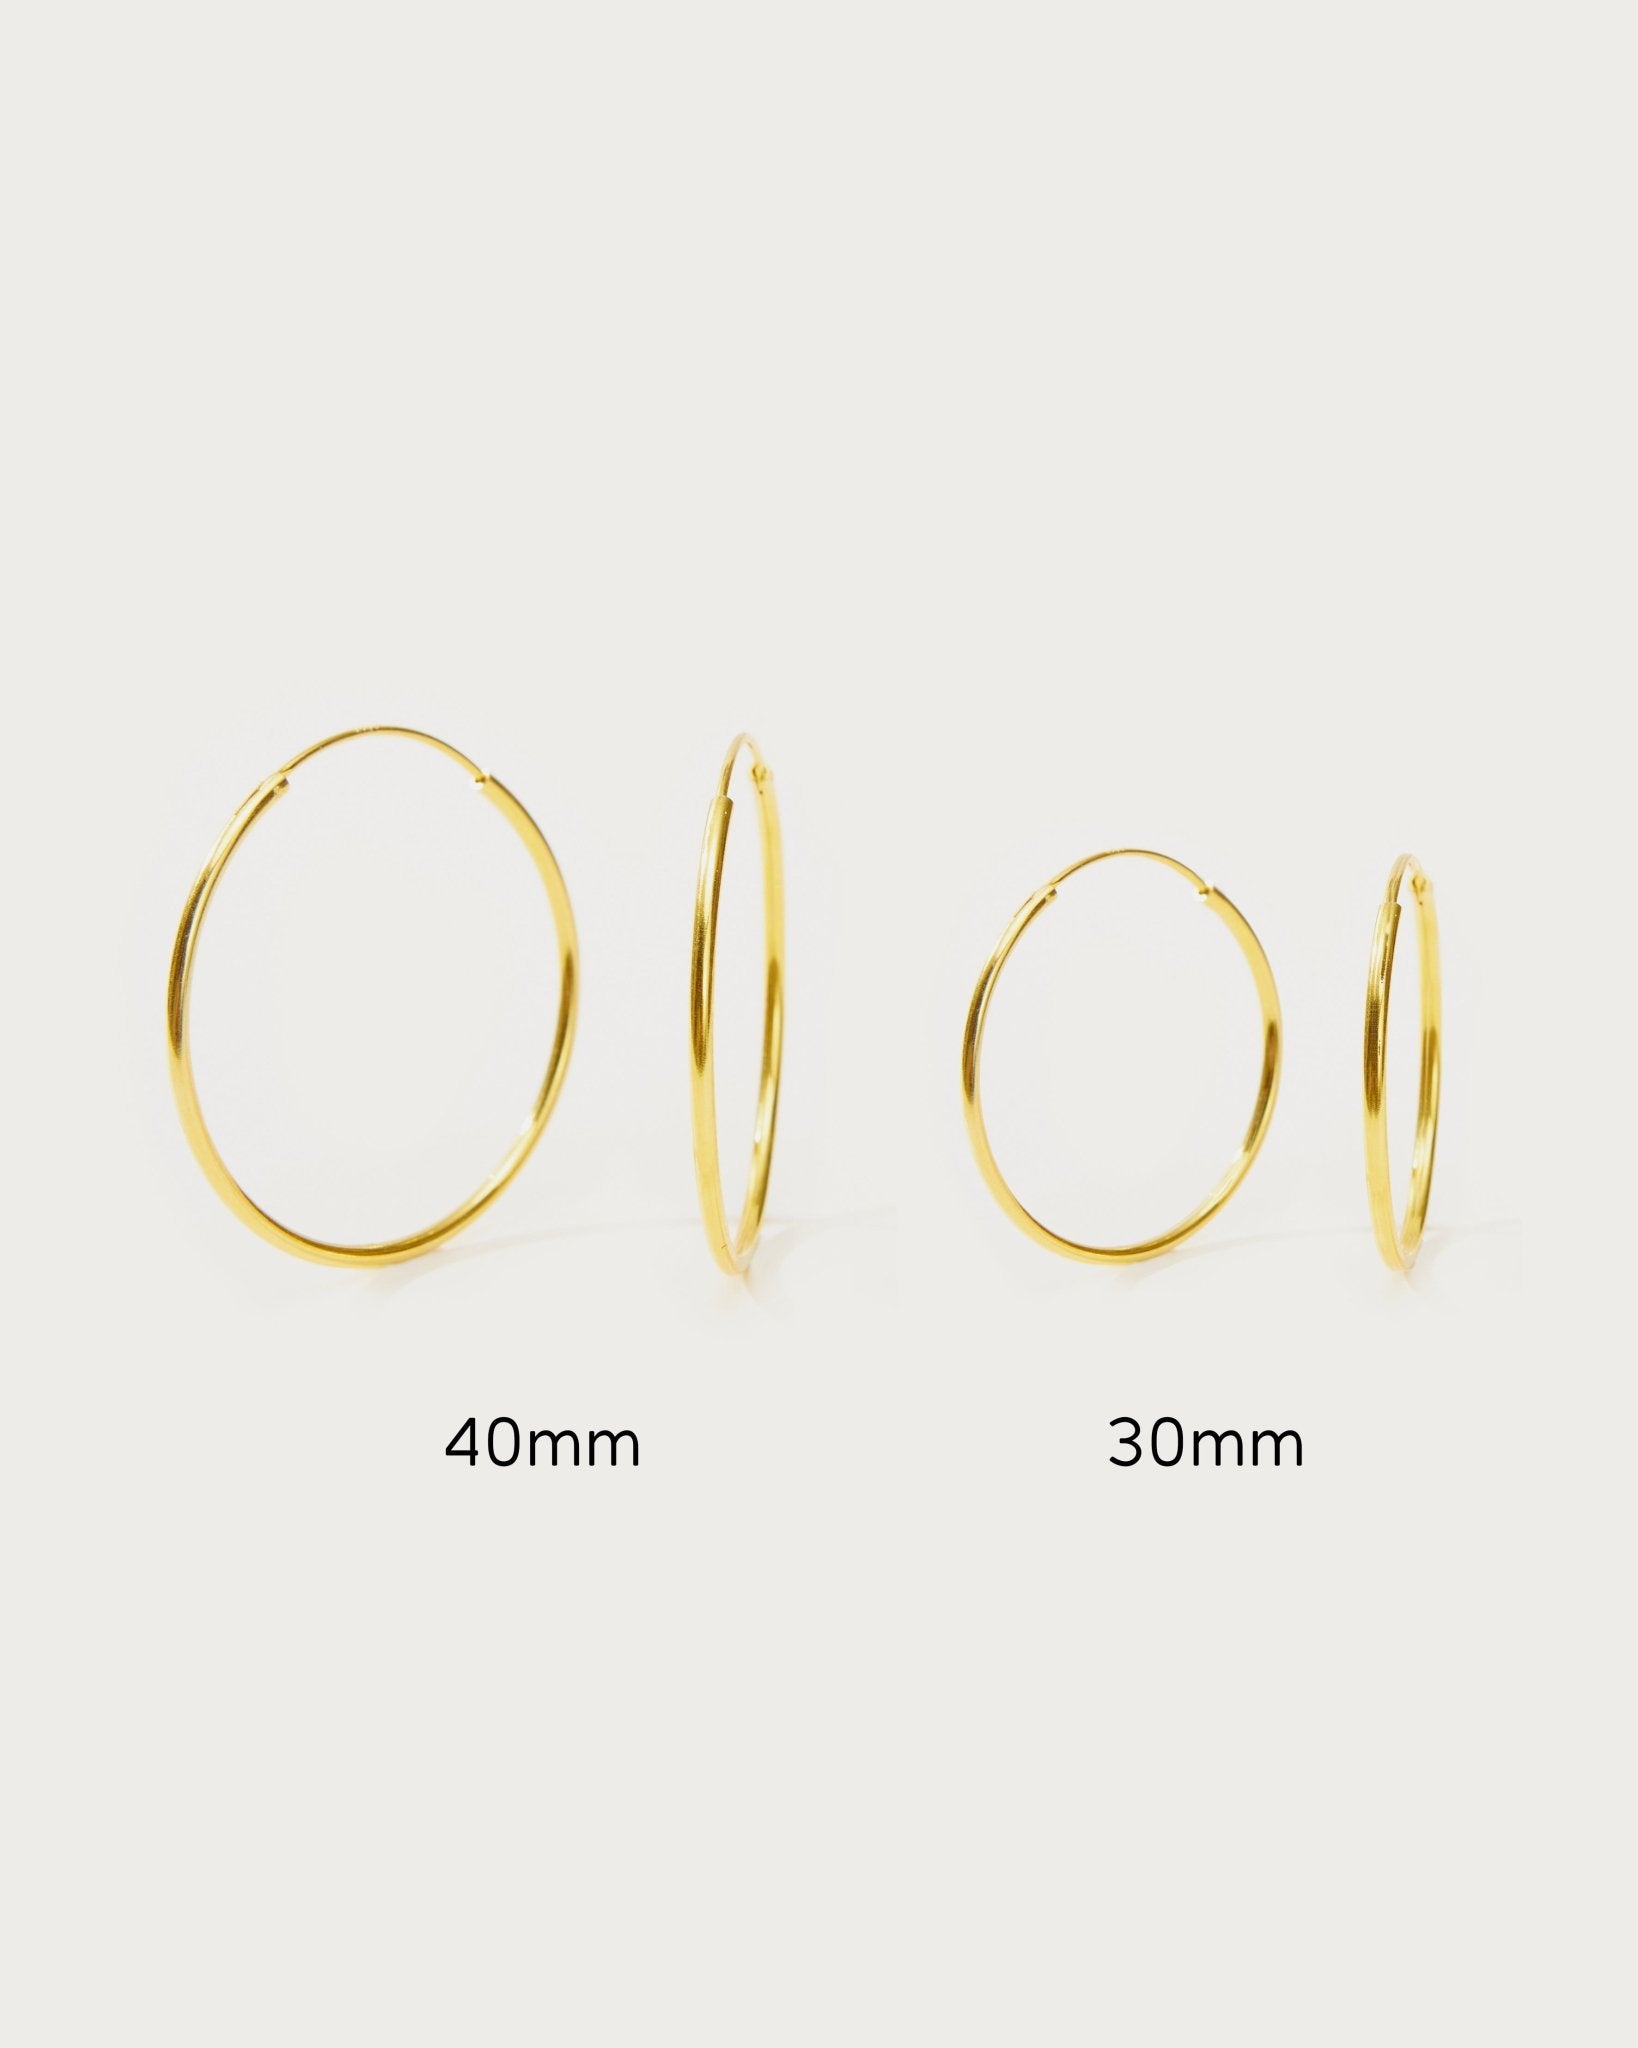 Gold 30mm Skinny Hoop Earrings